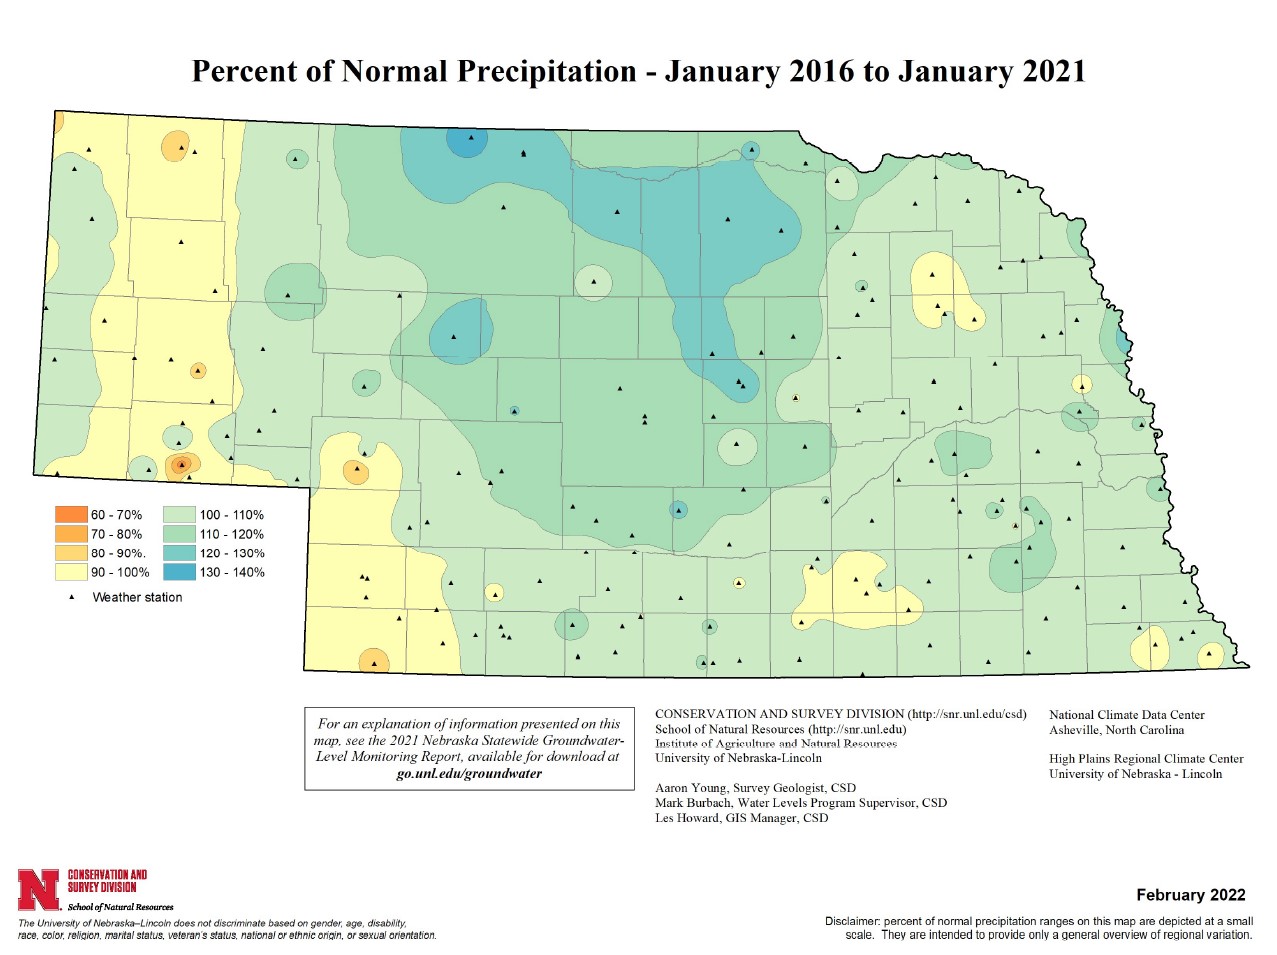 Percent of Normal Precipitation, January 2016 - January 2021